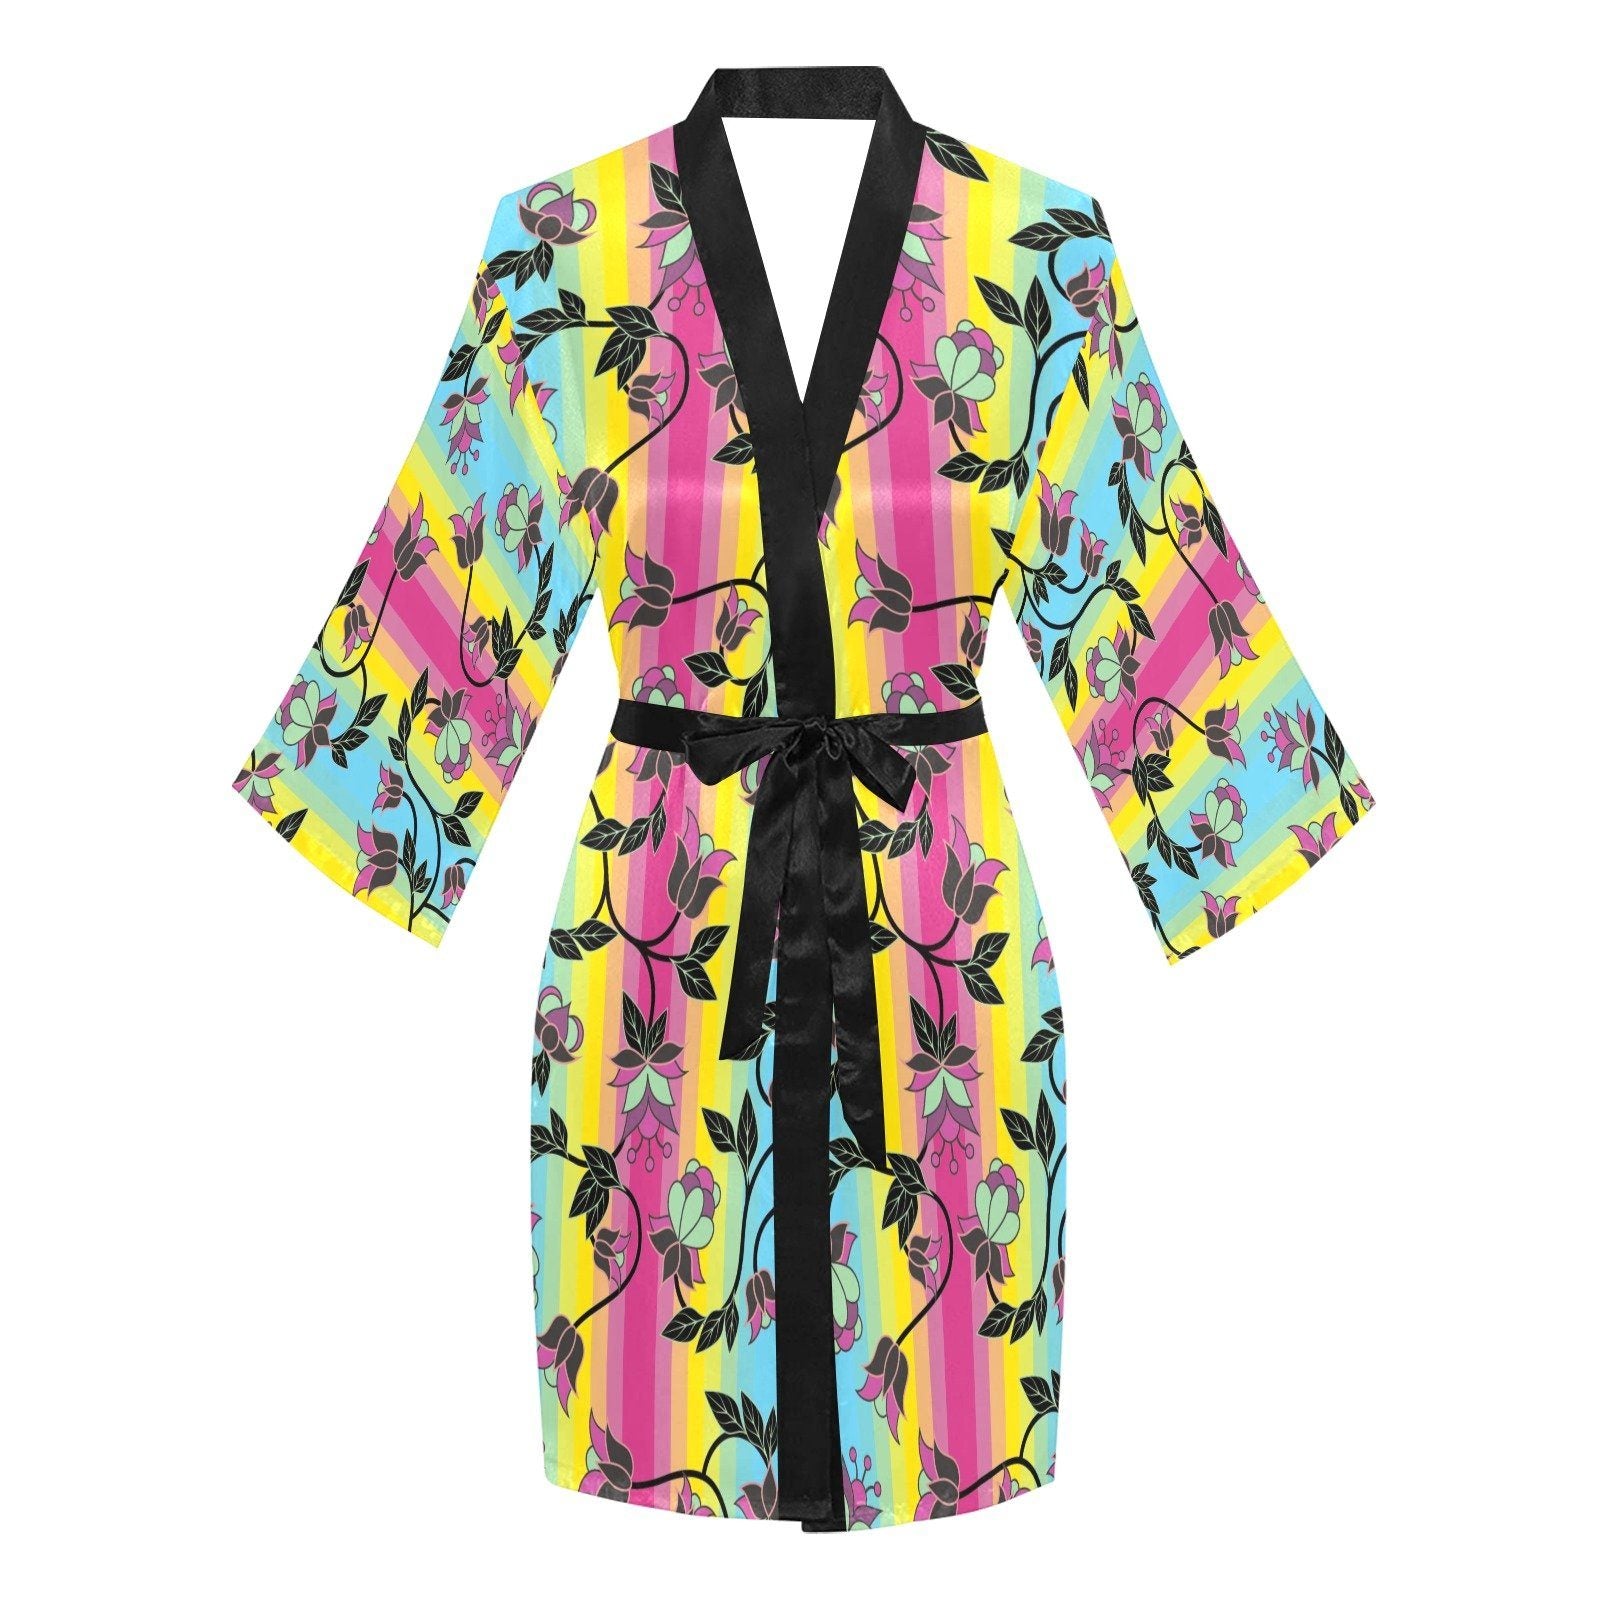 Powwow Carnival Long Sleeve Kimono Robe Long Sleeve Kimono Robe e-joyer 